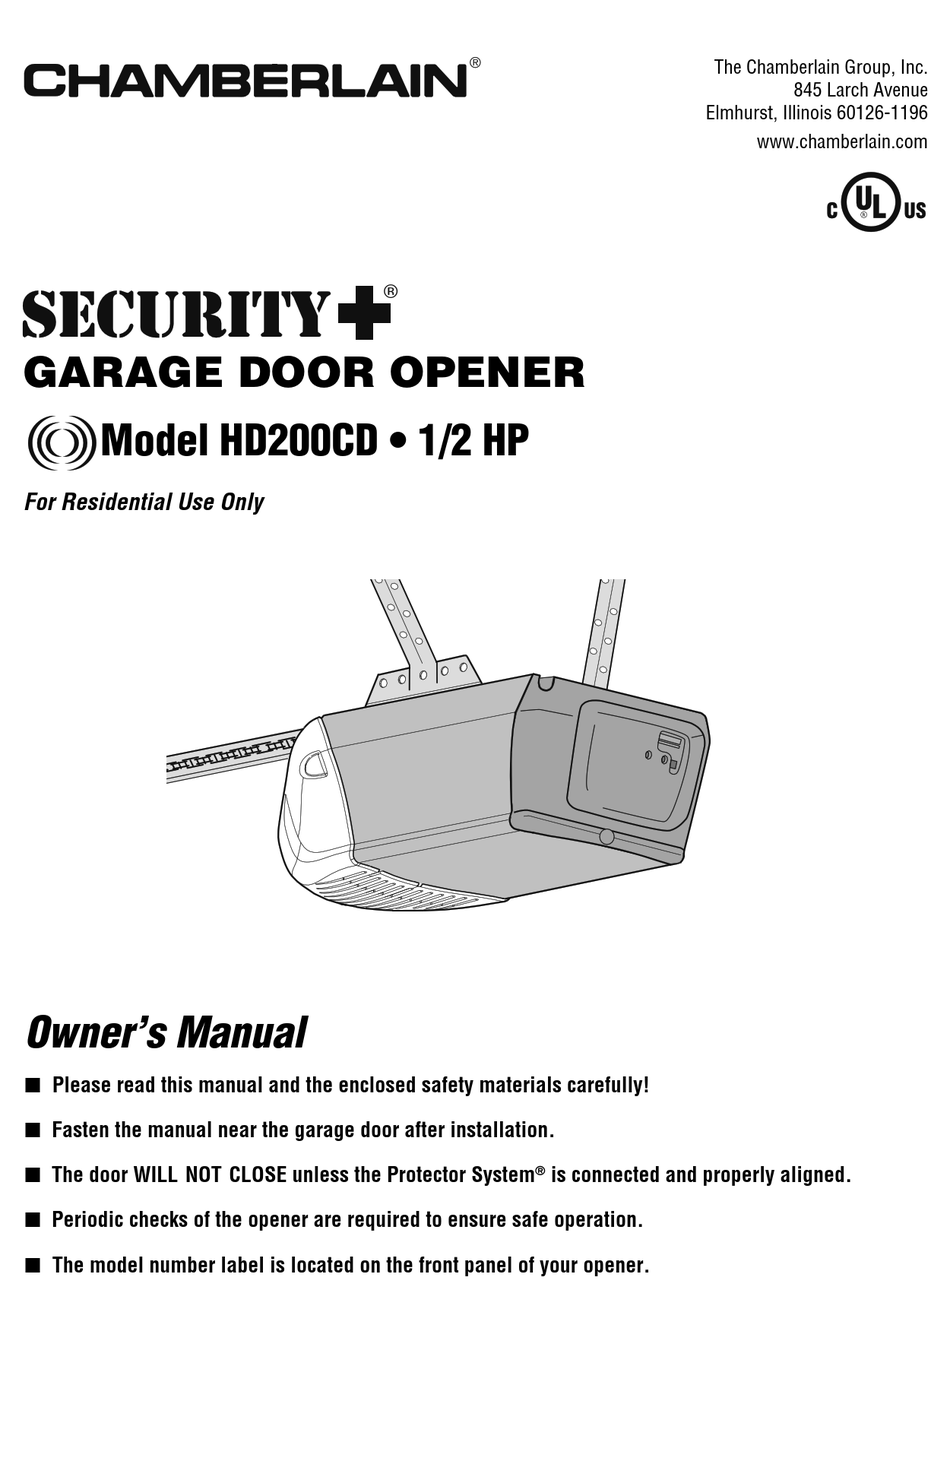 Chamberlain Security Garage Door Opener Manual